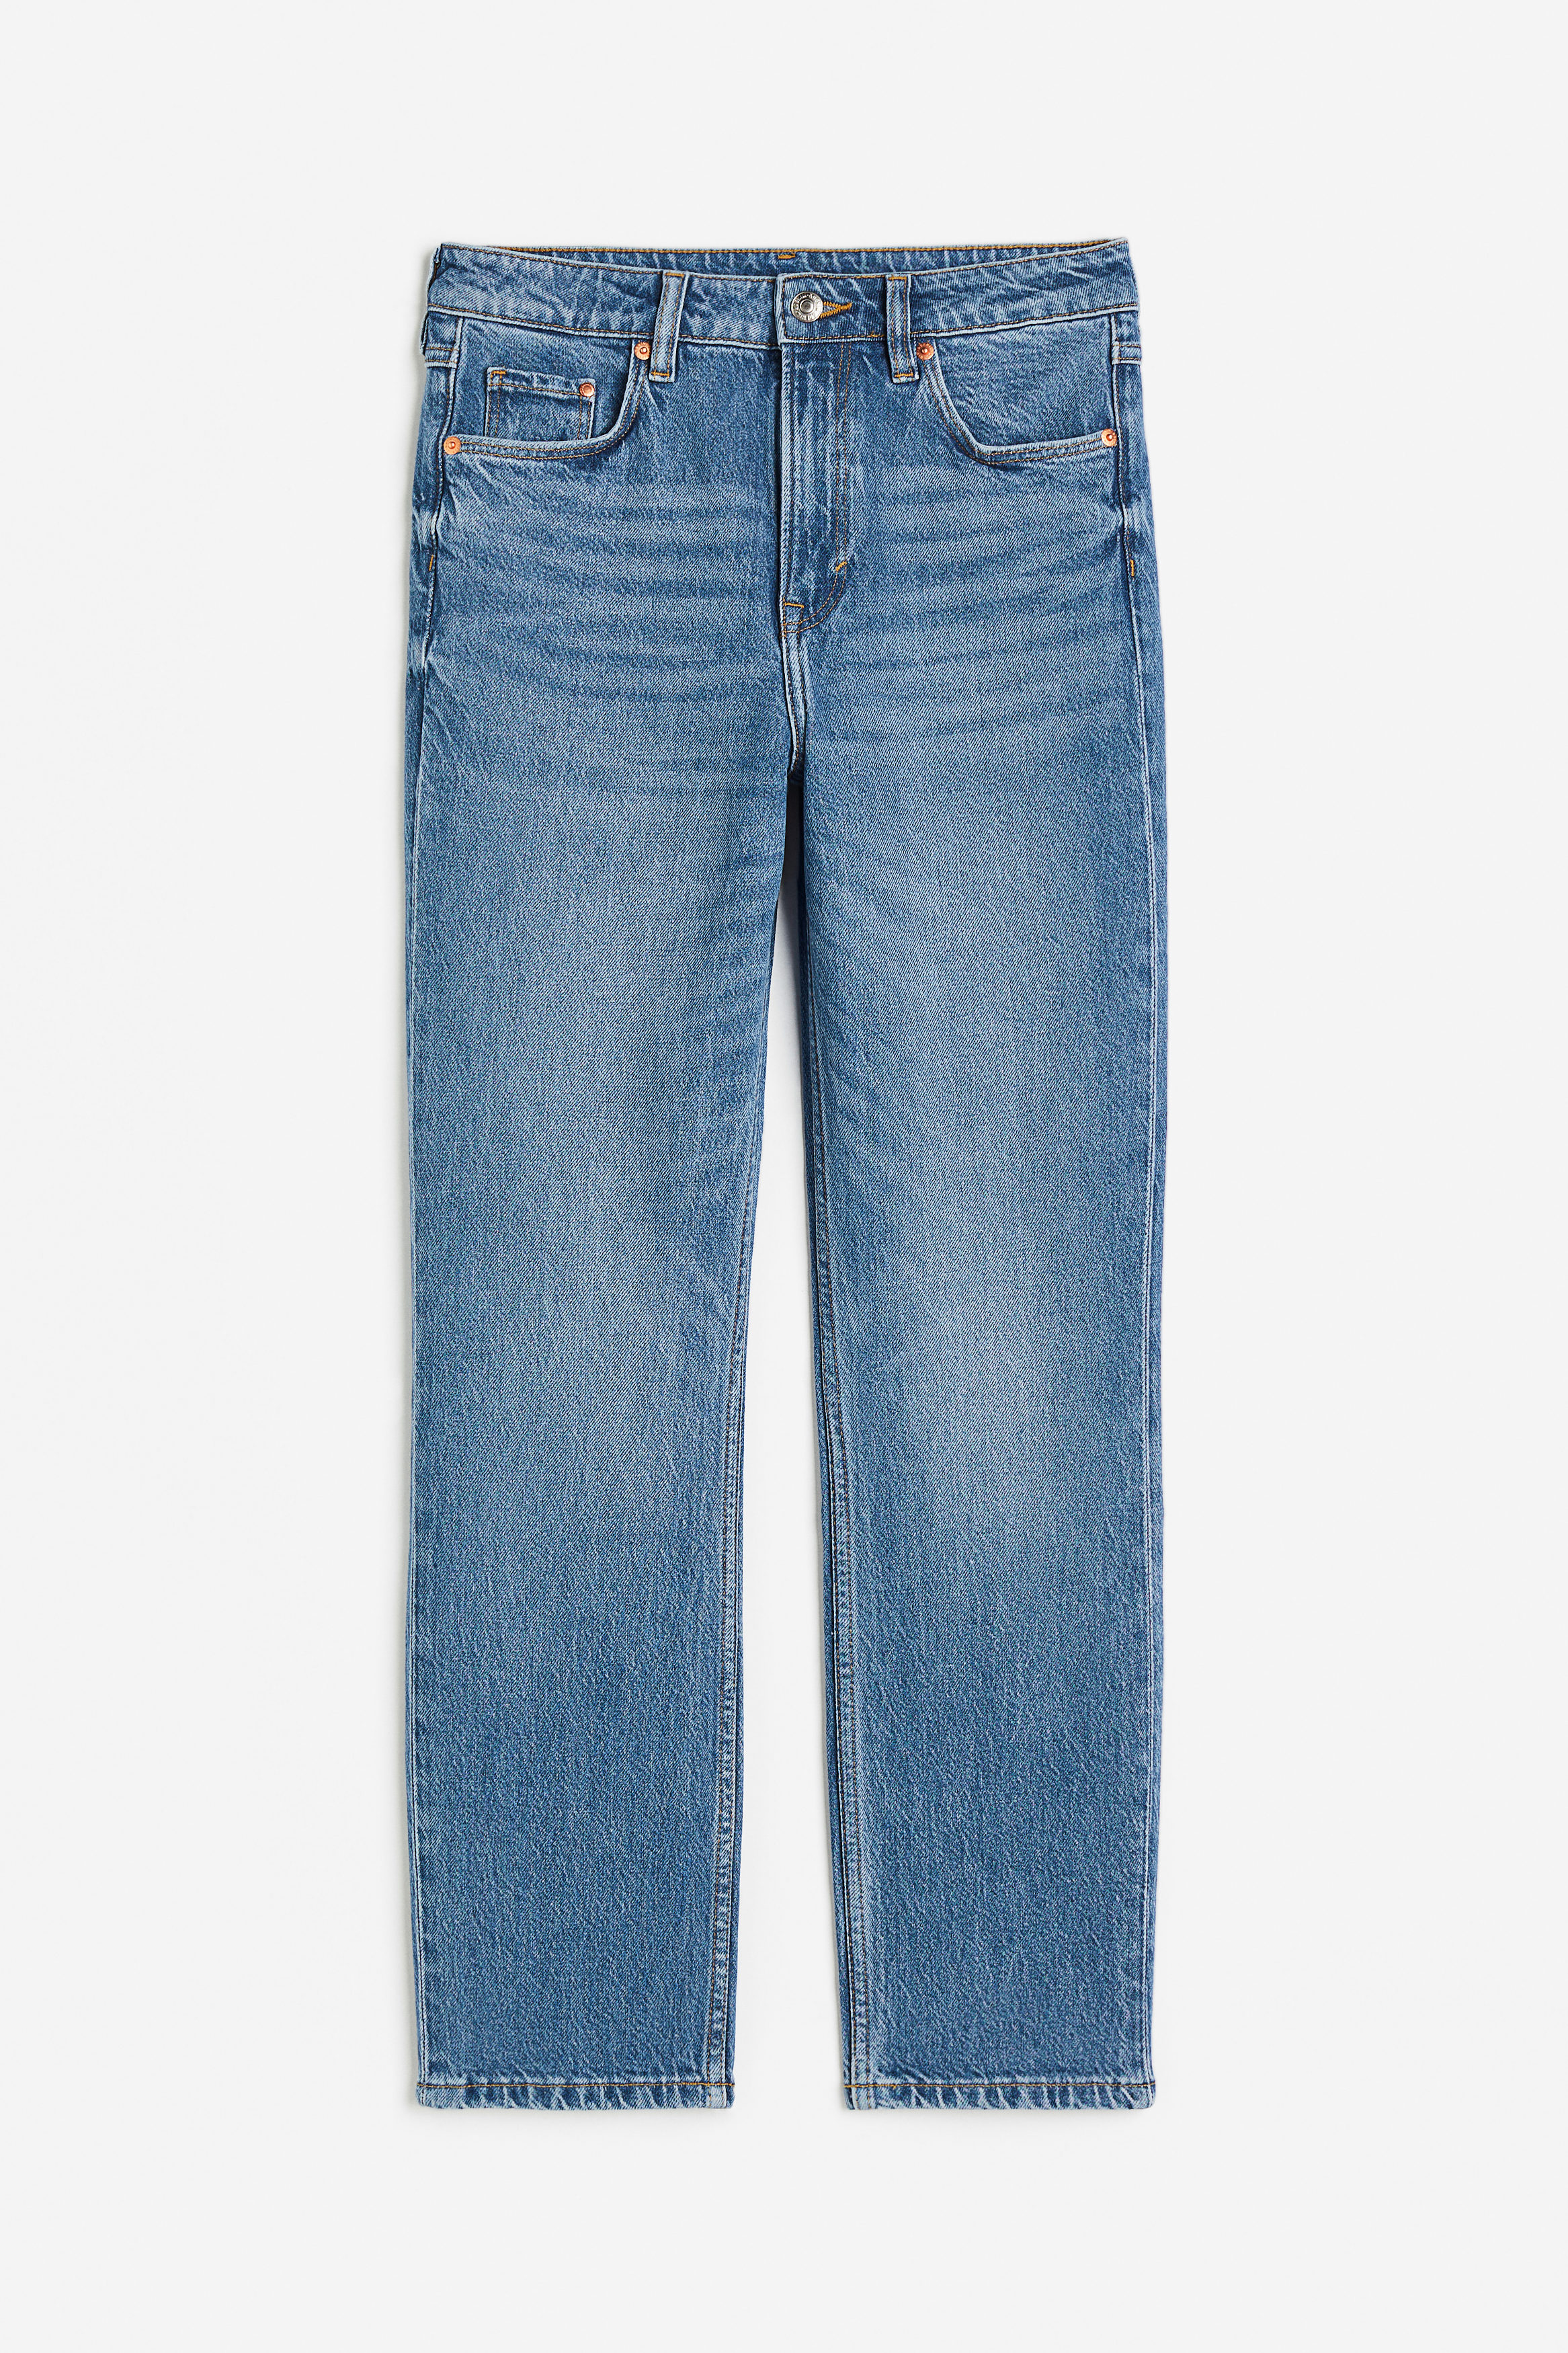 Billede af H&M Slim High Ankle Jeans Denimblå, Skinny jeans. Farve: Denim blue 002 I størrelse 50